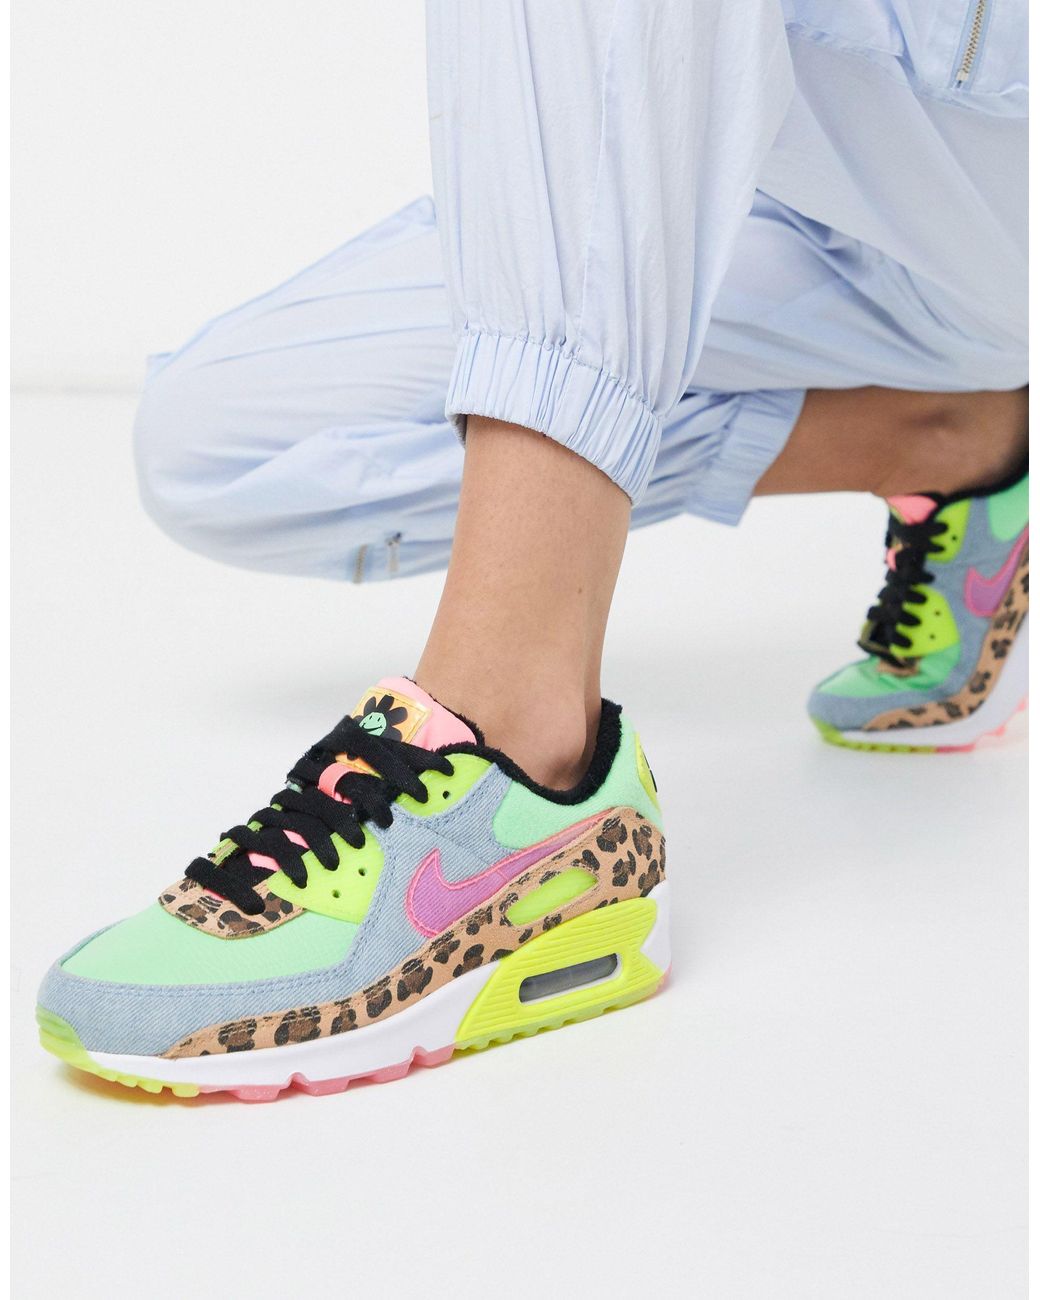 Gewend Verzadigen Tekstschrijver Nike Air Max 90 - Neon Sneakers Met Luipaardprint | Lyst NL